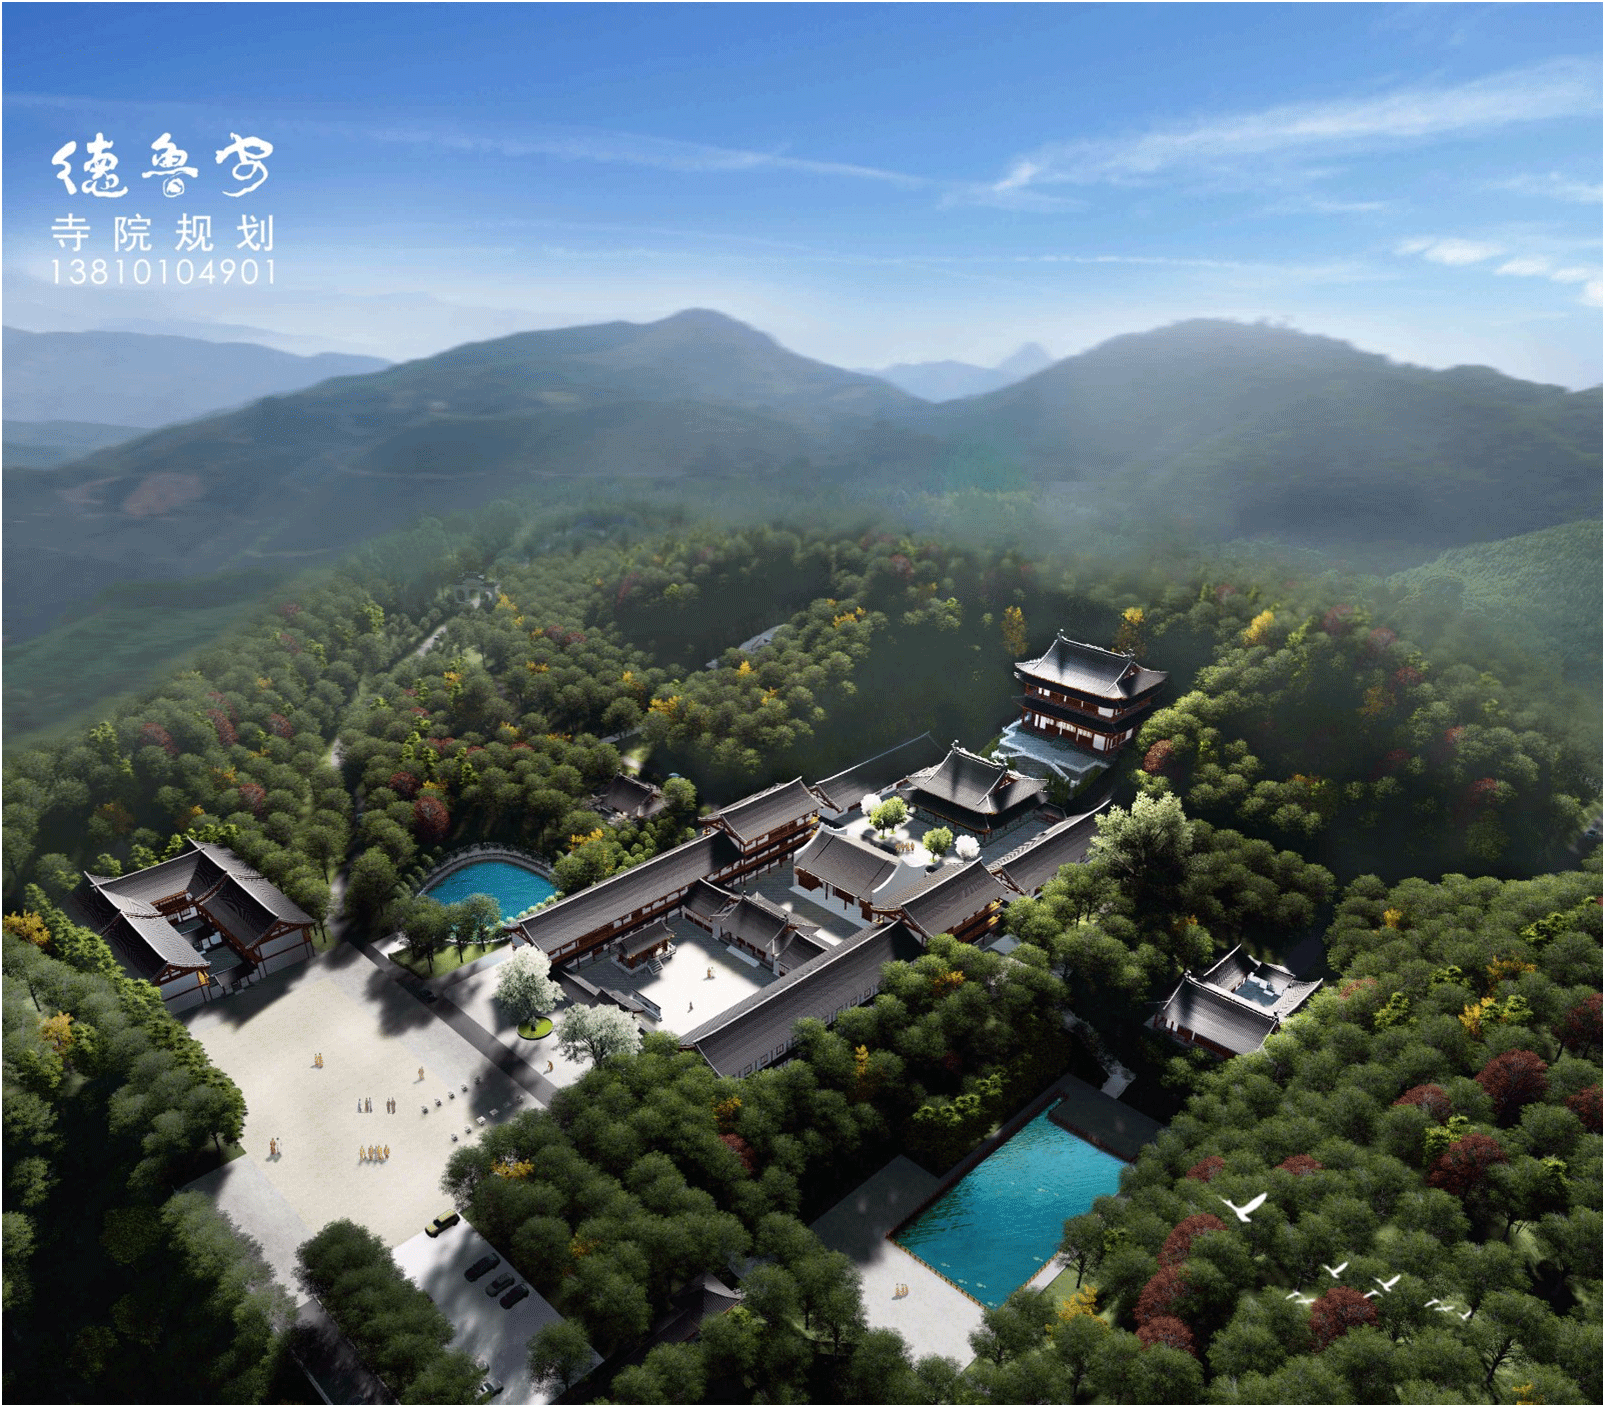 Master plan of Qing'an temple in Fuzhou Fujian